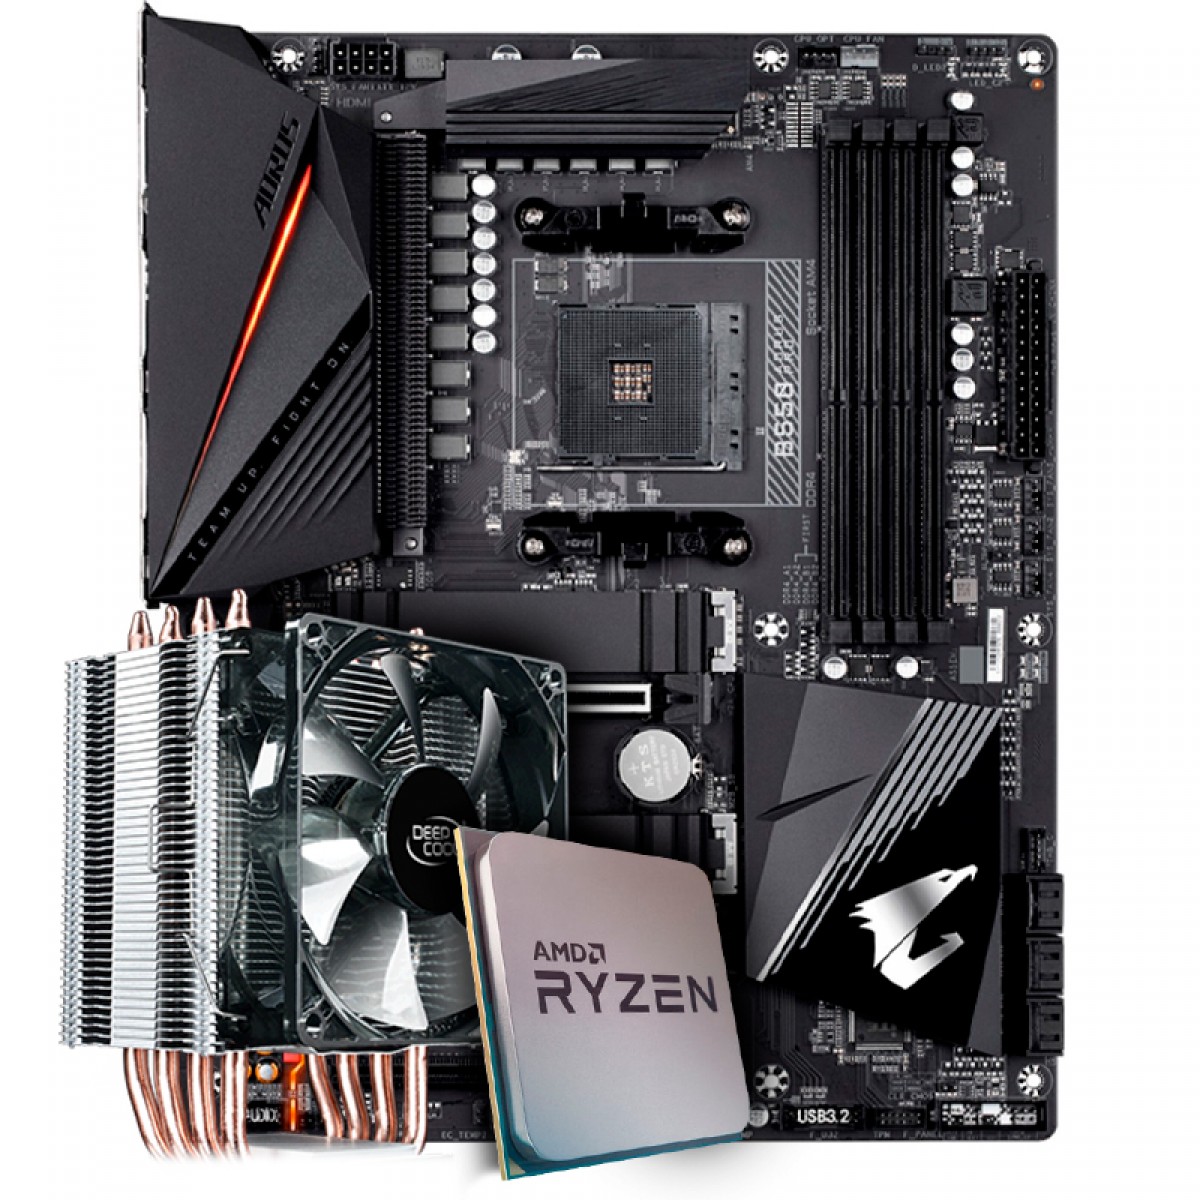 Kit Upgrade Placa Mãe Gigabyte B550 Aorus Pro, Chipset B550 AMD AM4 + Processador AMD Ryzen 9 3900x 3.8GHz + Cooler Deepcool Gammaxx